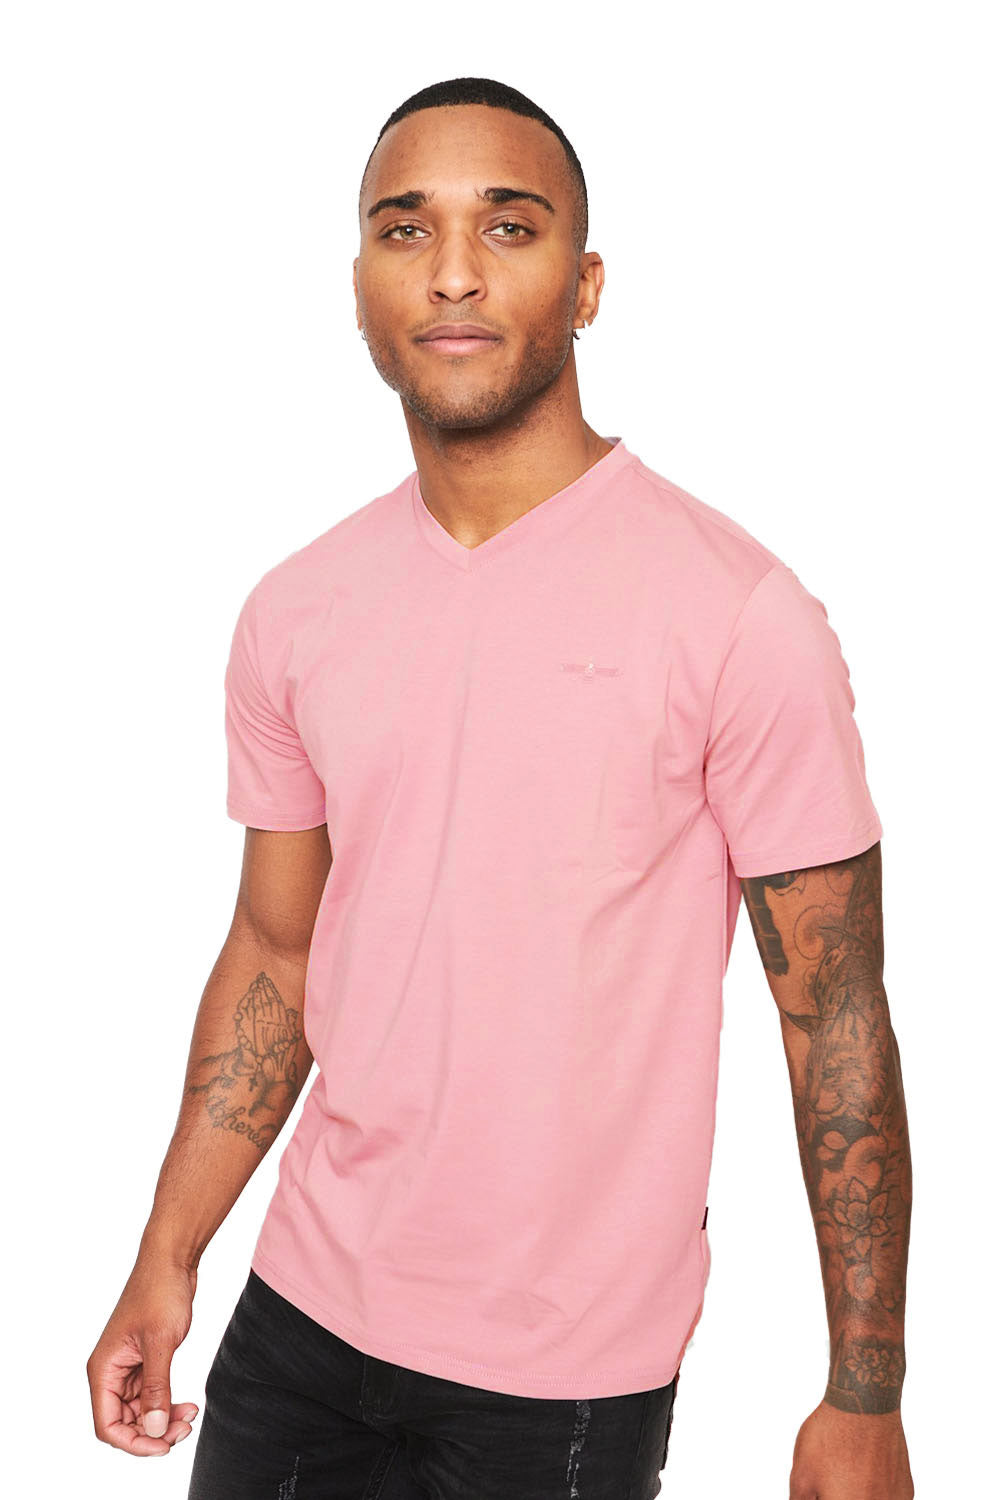 BARABAS Men's Solid Color V-neck T-shirts VTV216 Rose Pink